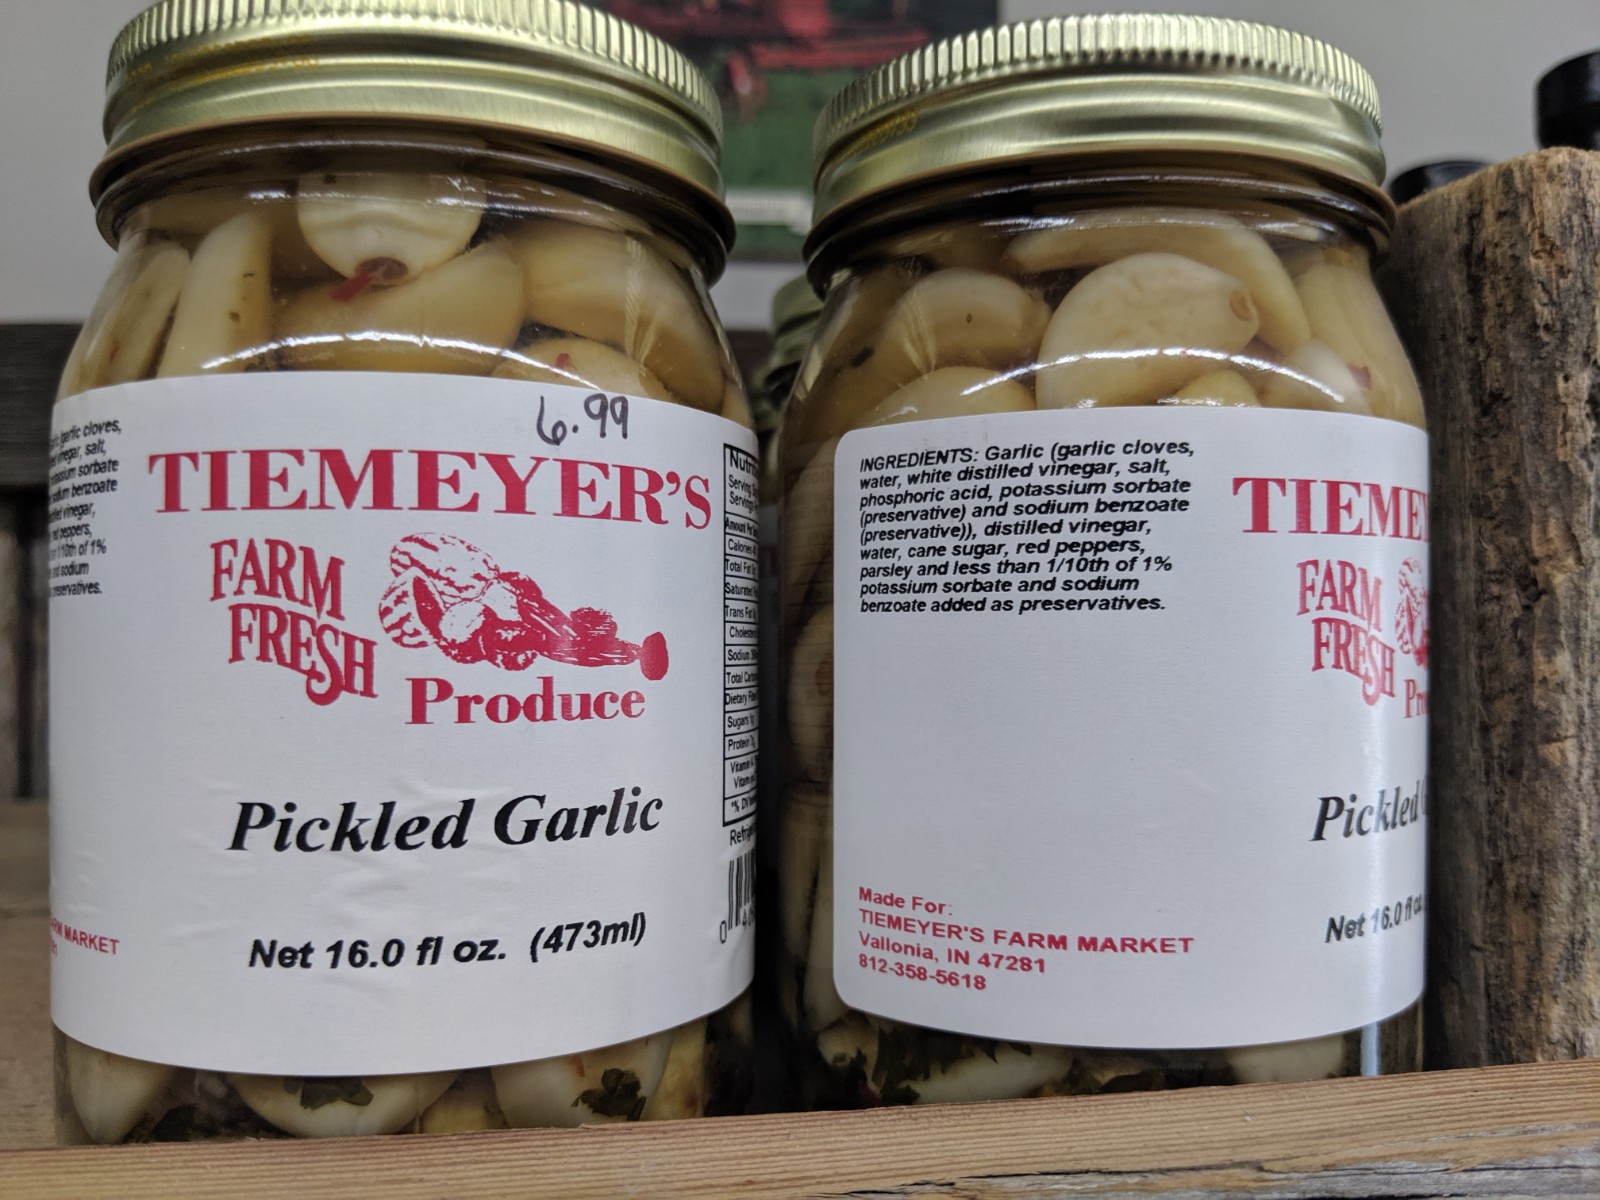 Cloves of Garlic in a jar salt and bulbs